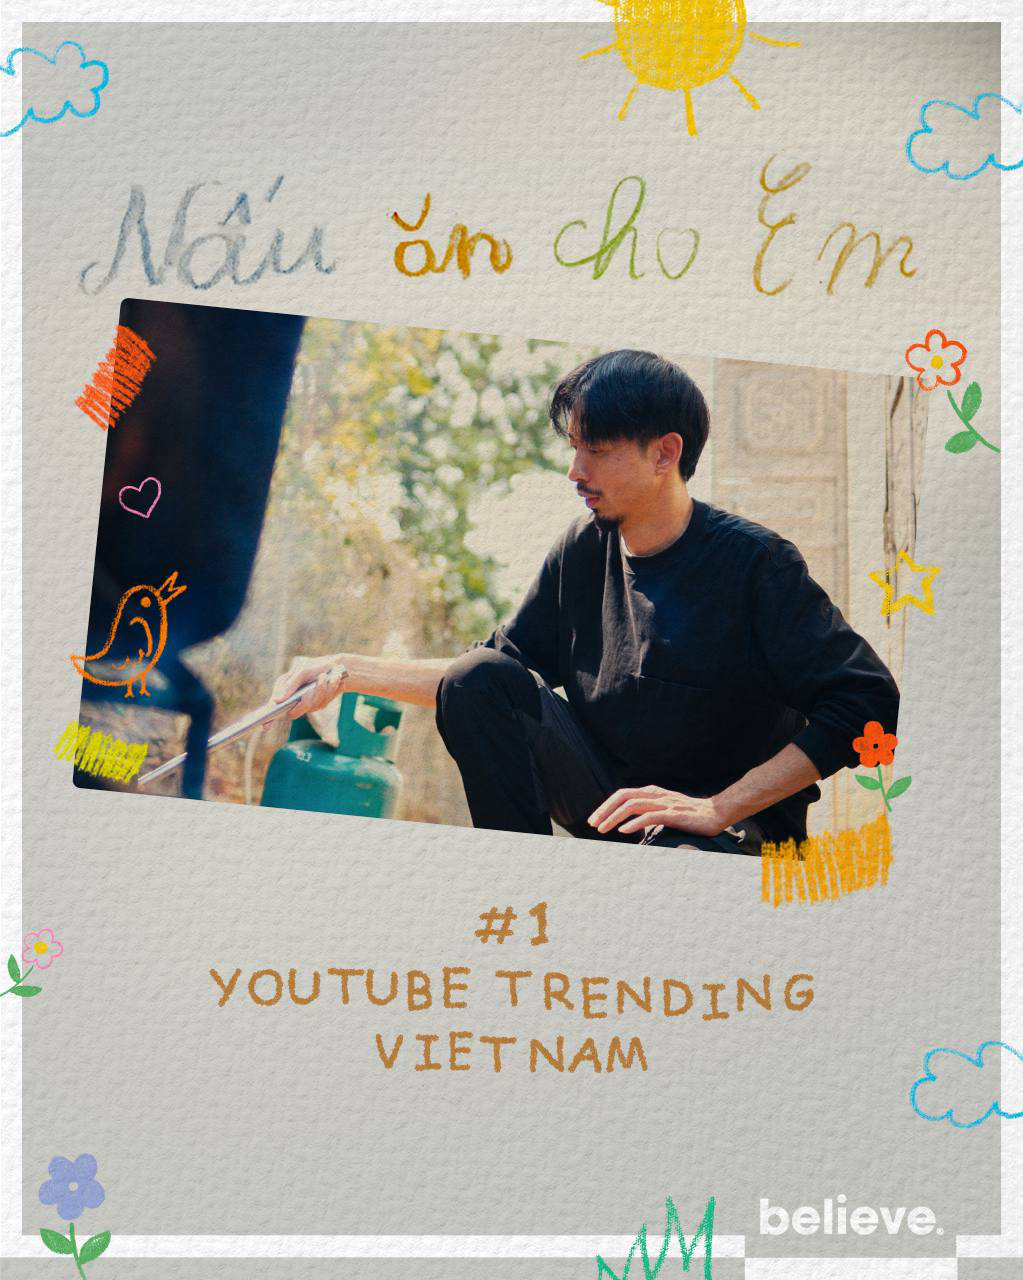 Nấu Ăn Cho Em - MV thứ 16 của Đen giành Top 1 Trending YouTube - Ảnh 1.